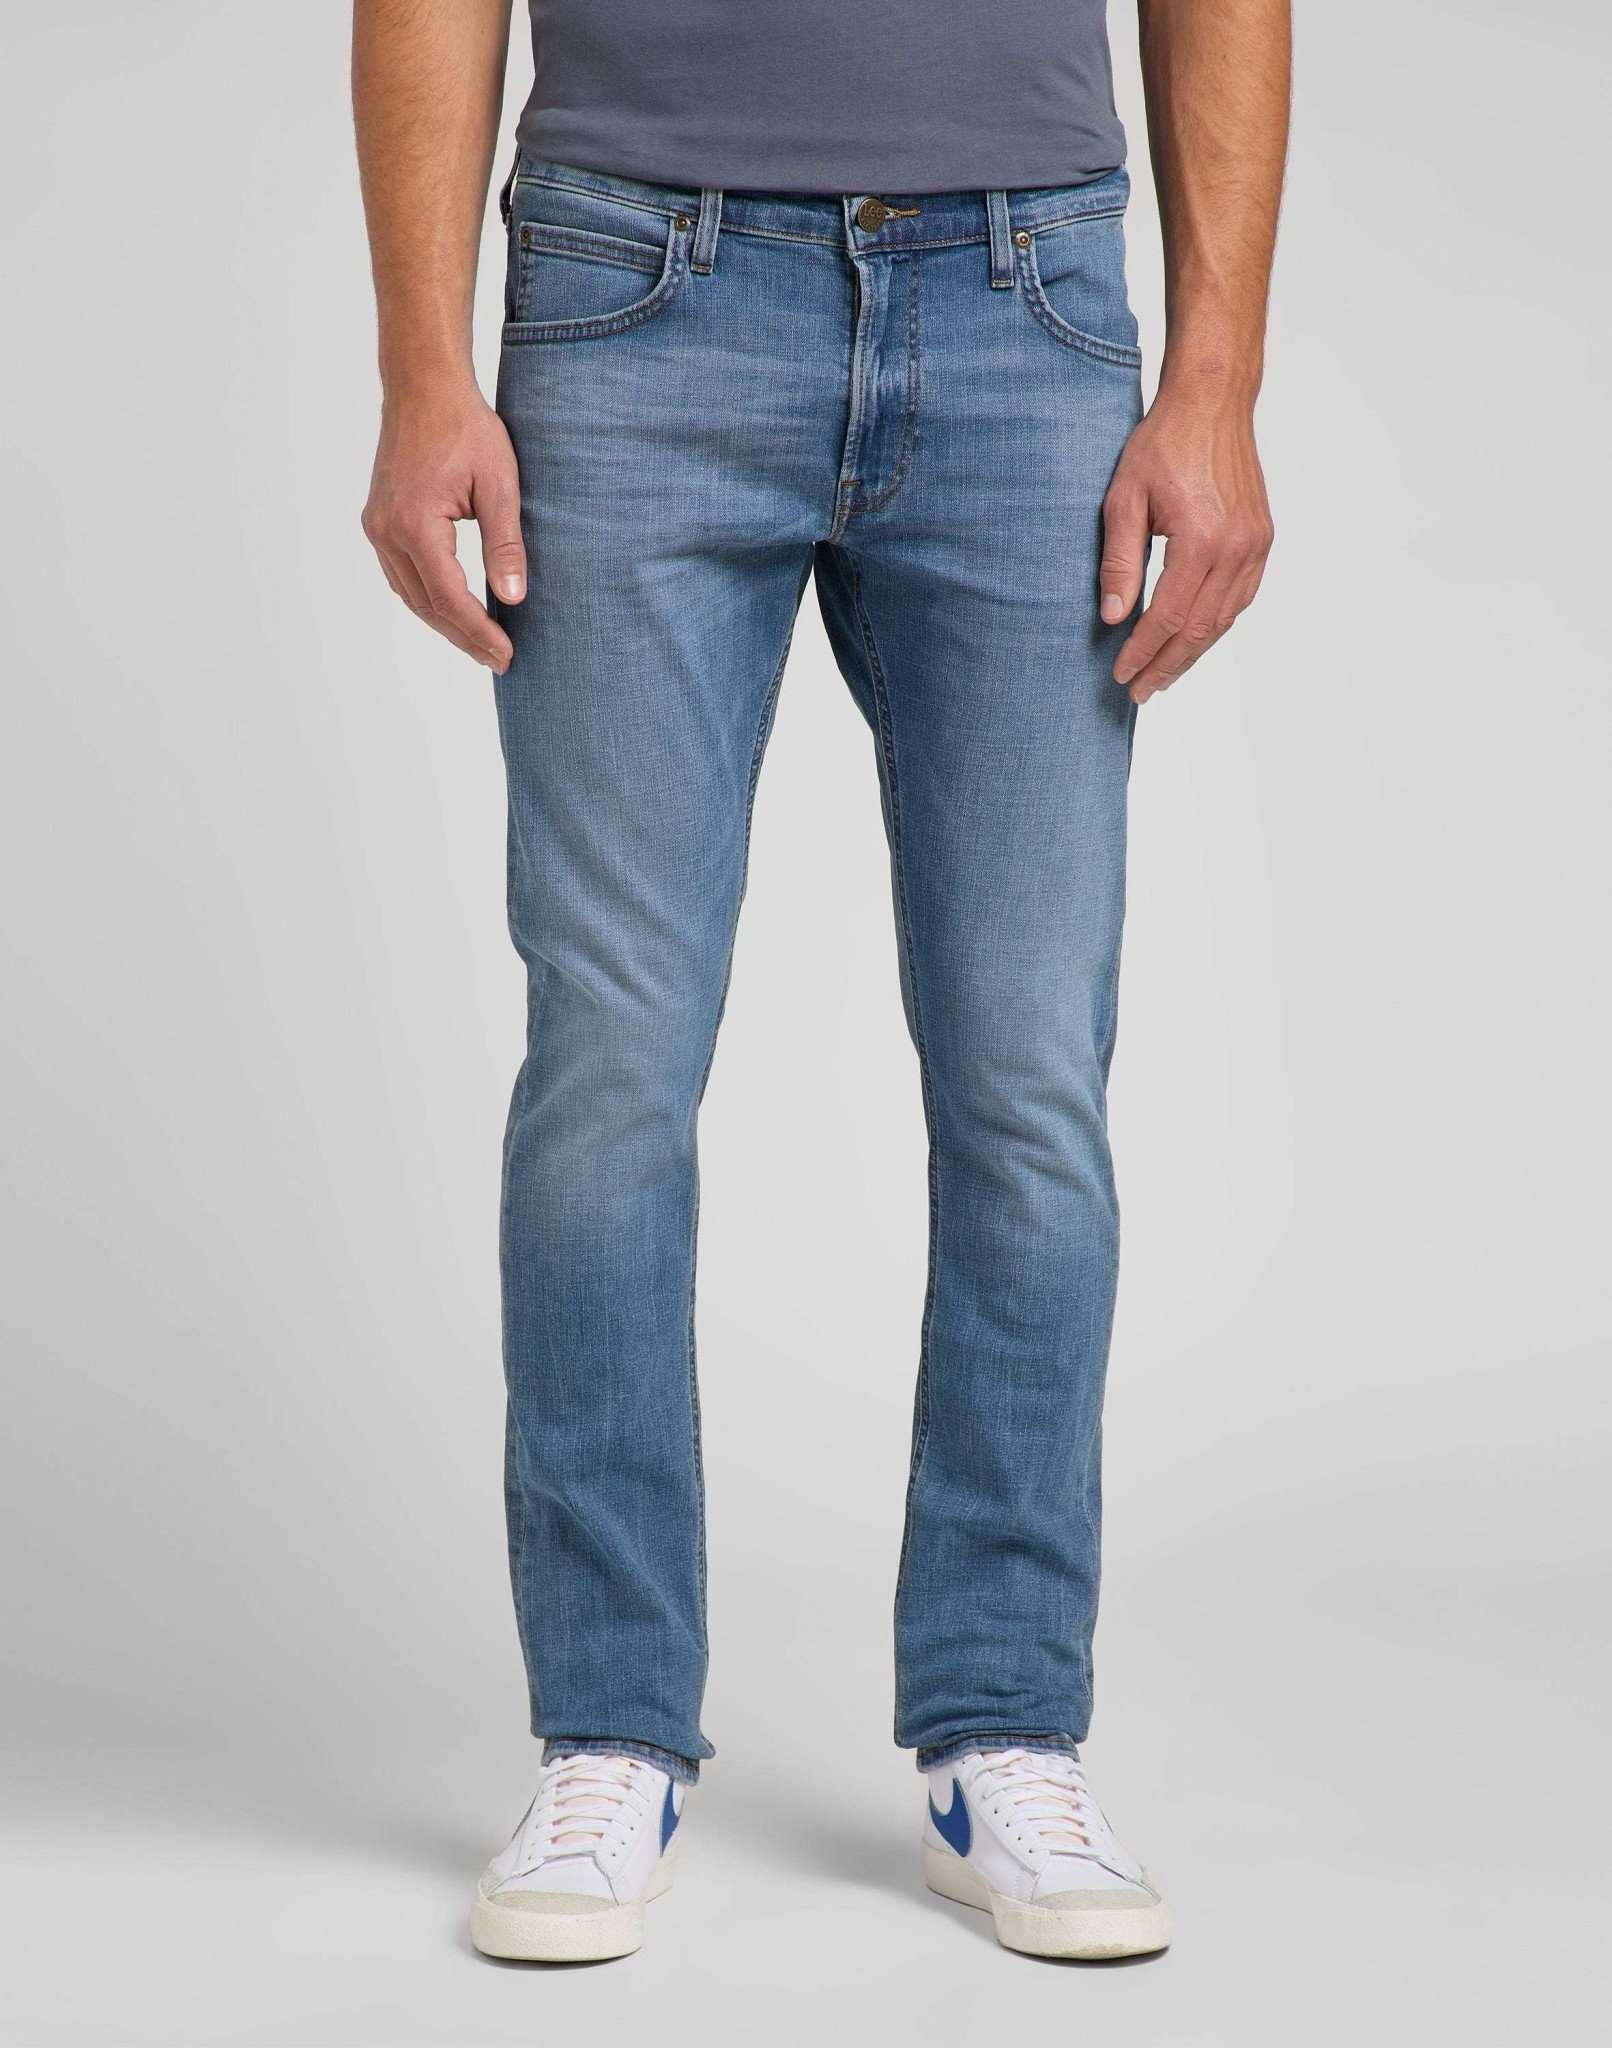 Jeans Slim Fit Luke Herren Blau Denim L30/W30 von Lee